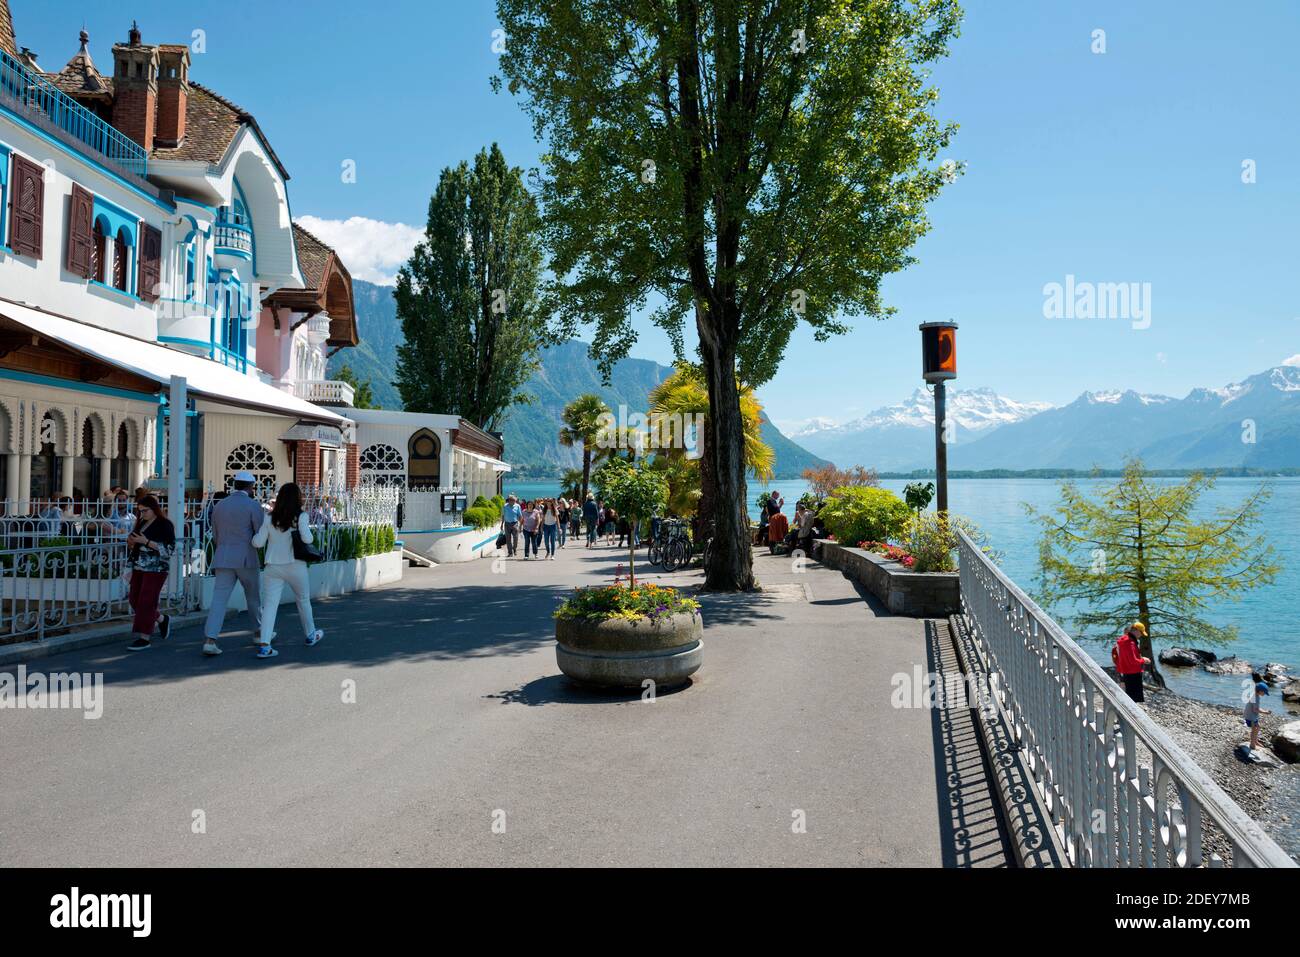 Svizzera, Vaud, Waadt, Lac Léman, Genfer See, Lago di Ginevra, Montreux, ville, Stadt, città, Les quais, die Docks, le banchine Foto Stock